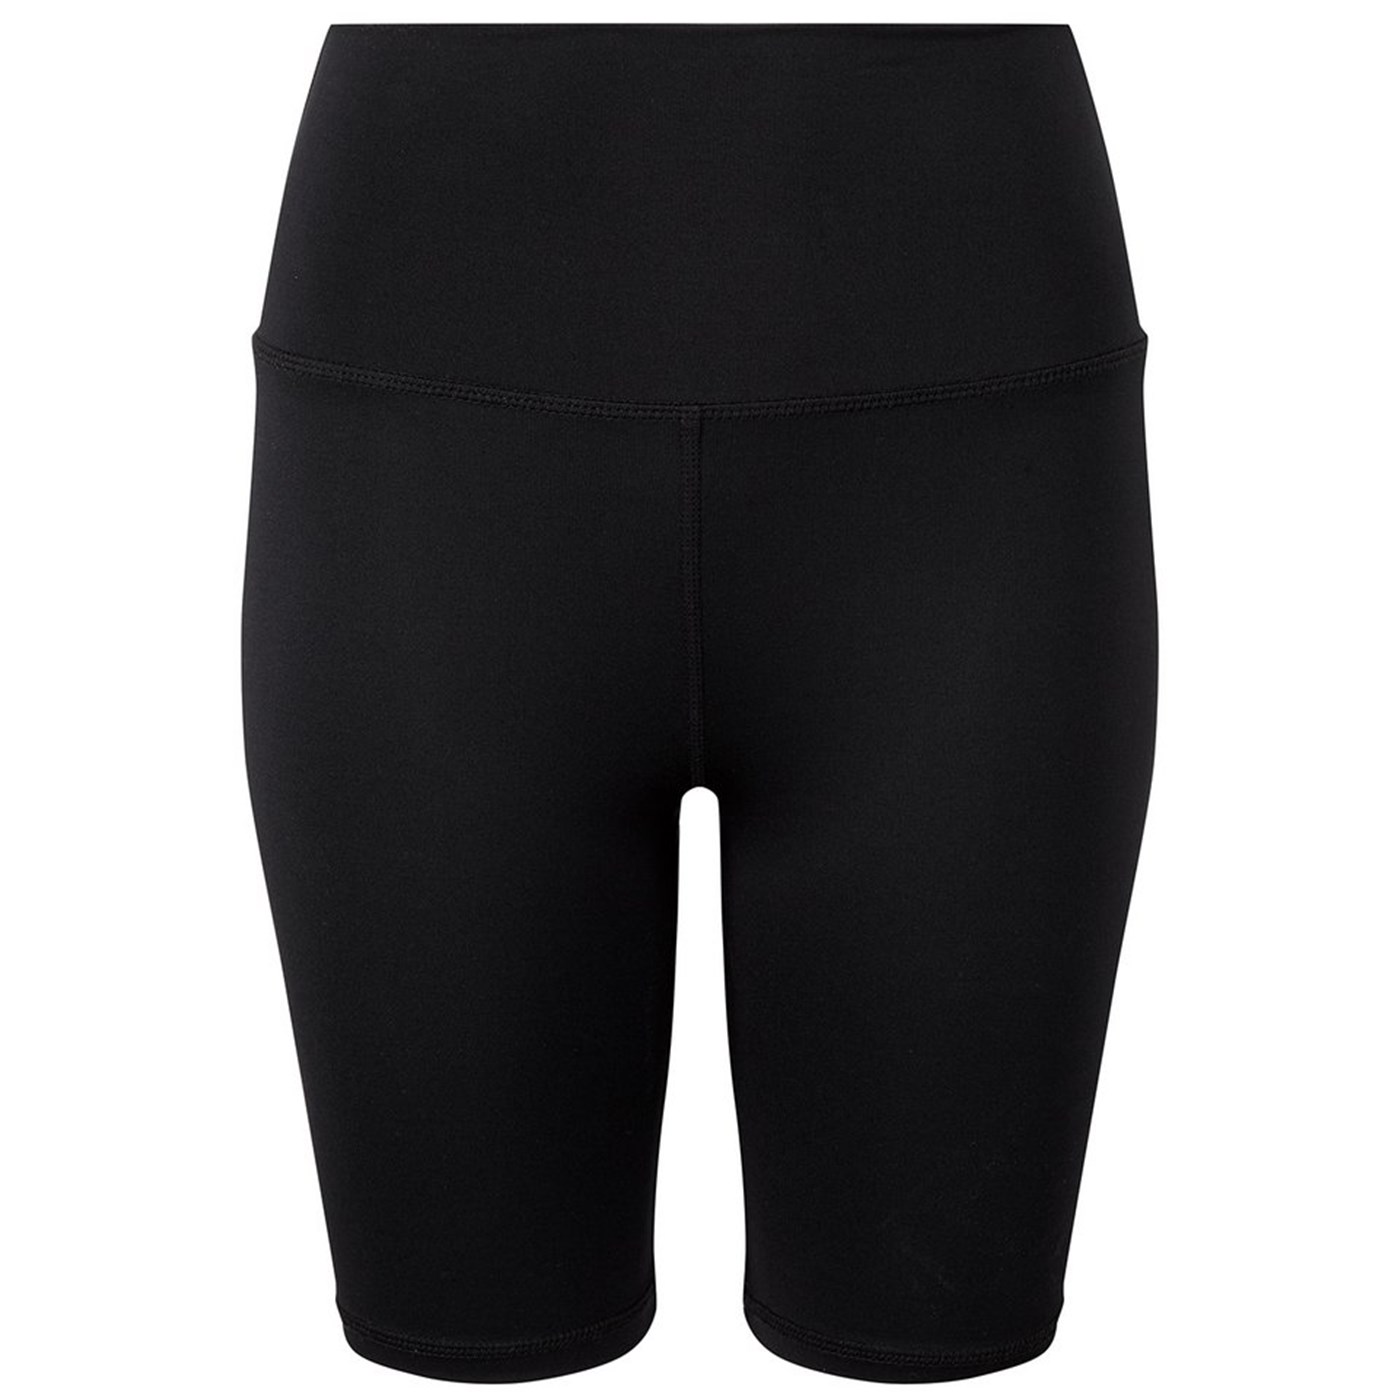 Women's TriDri® legging shorts TR046